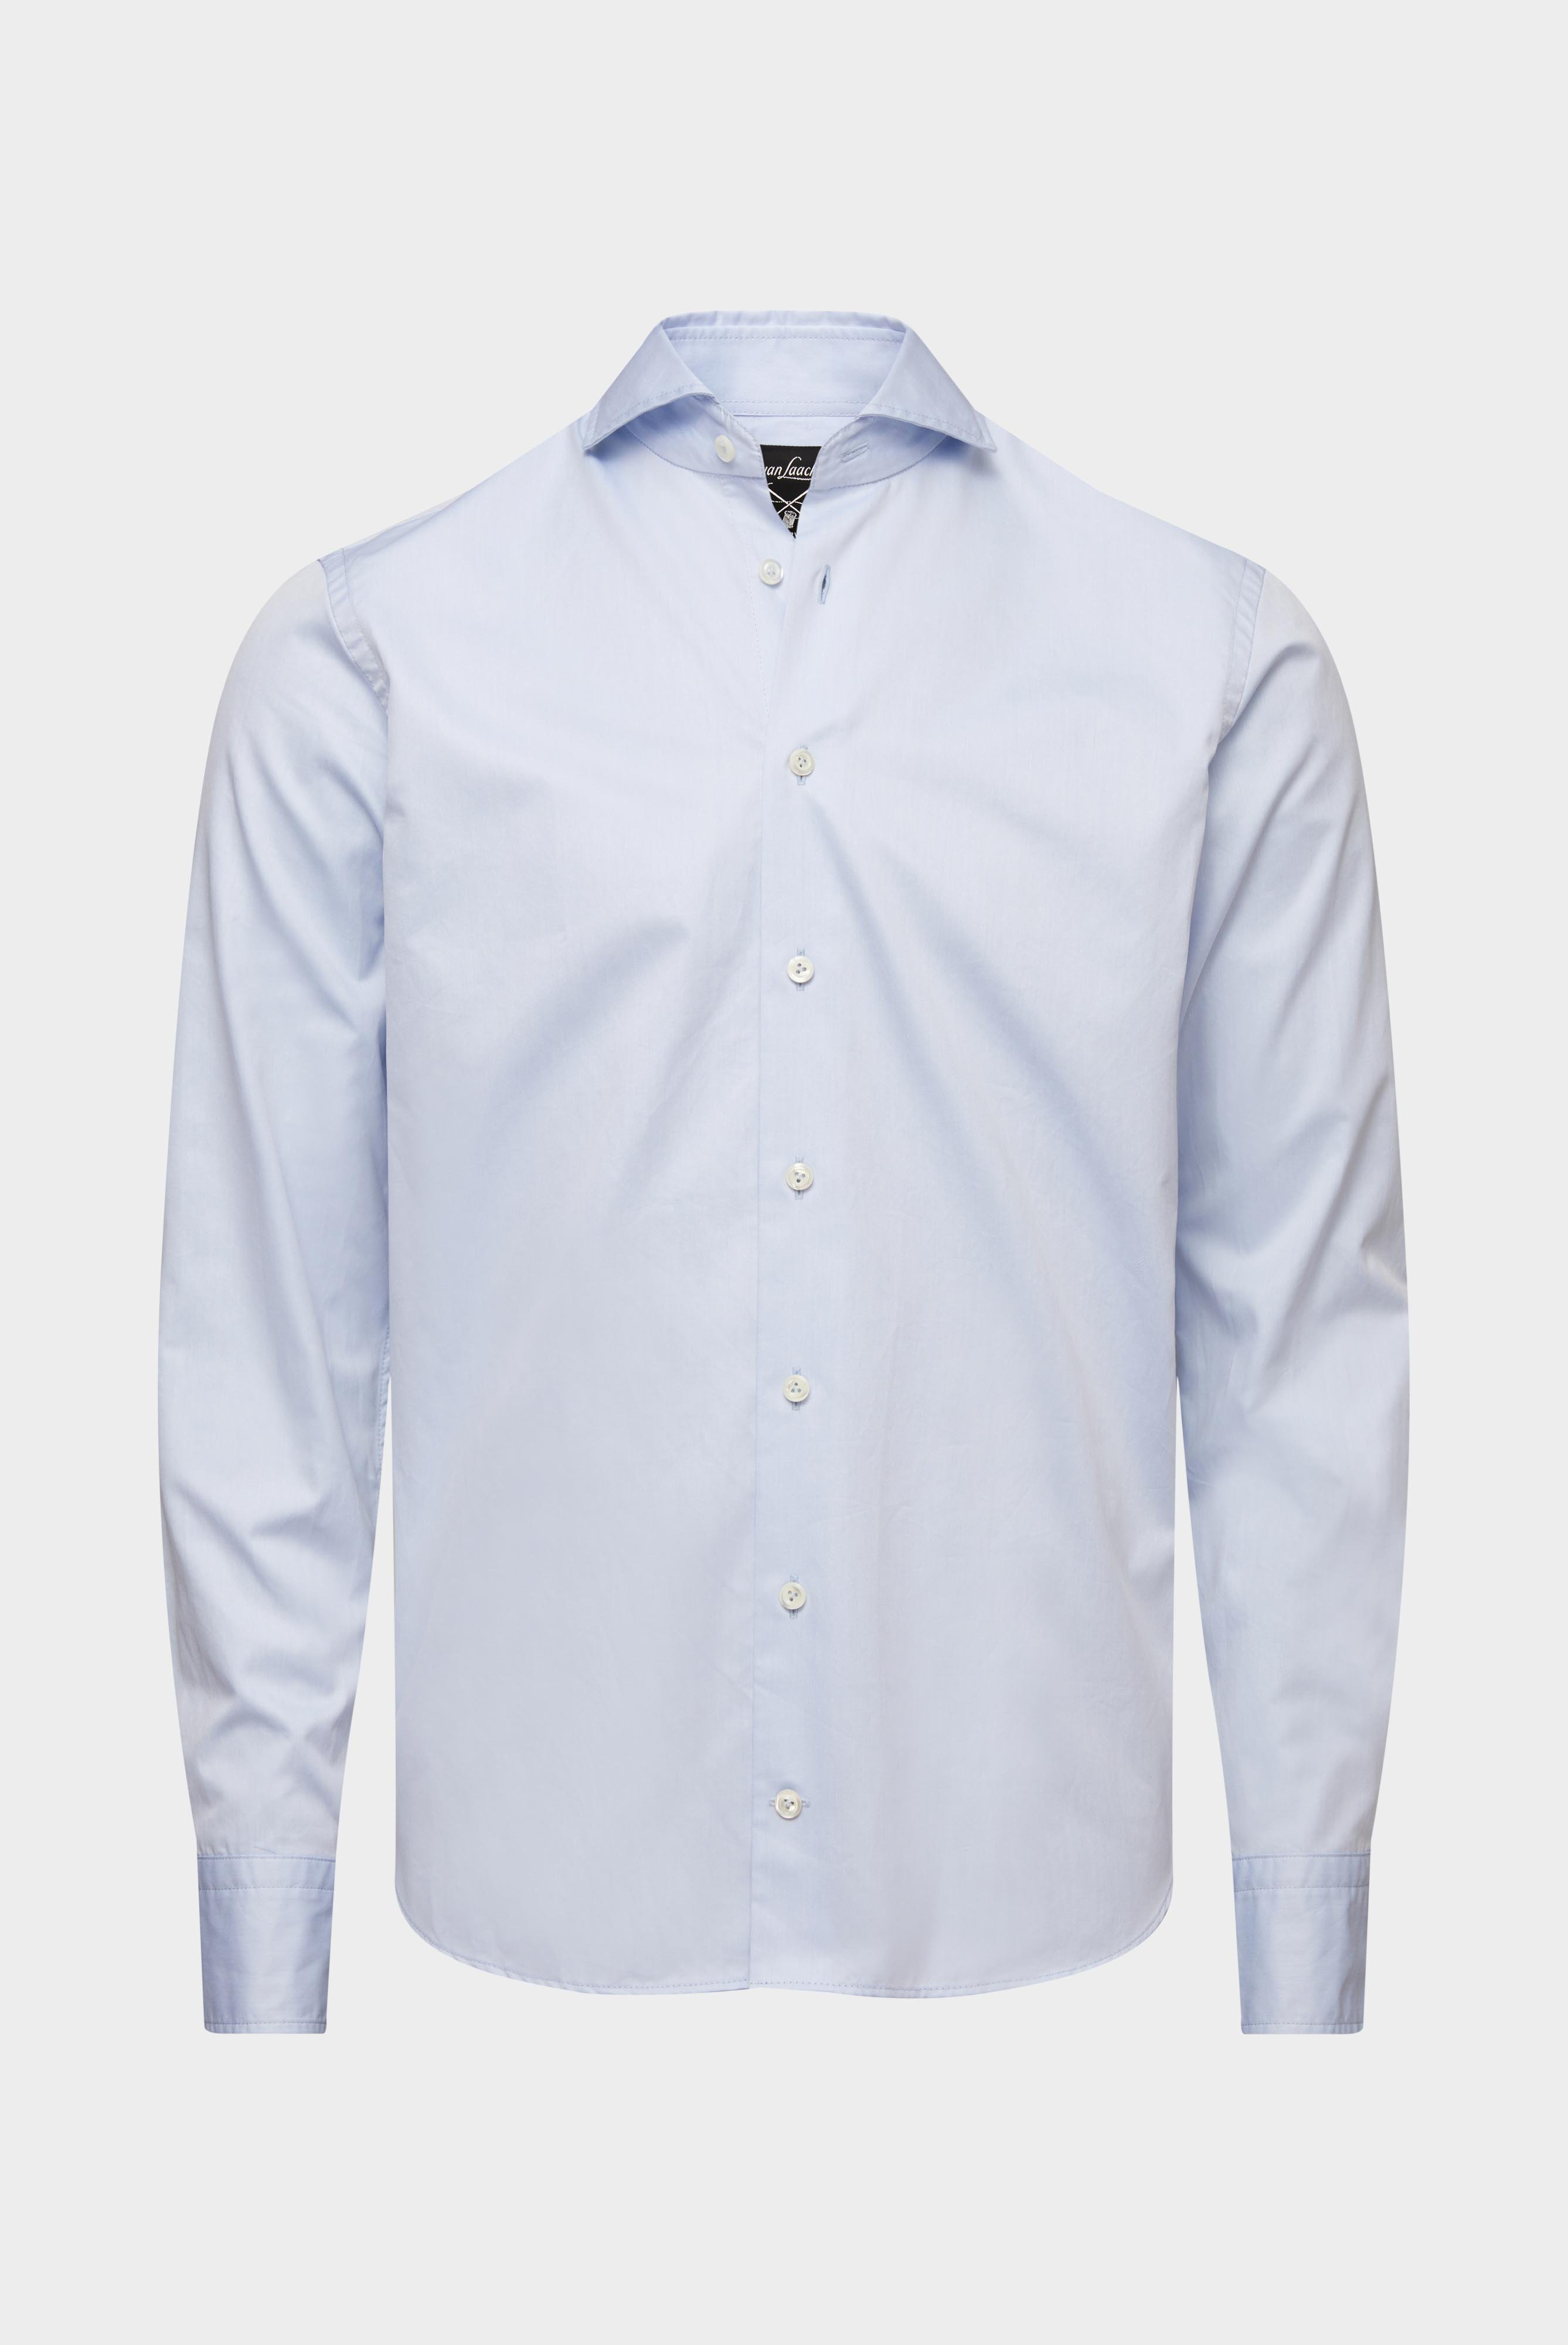 Business Shirts+Soft Washed Fine Twill Shirt+20.2015.EB.160708.720.41